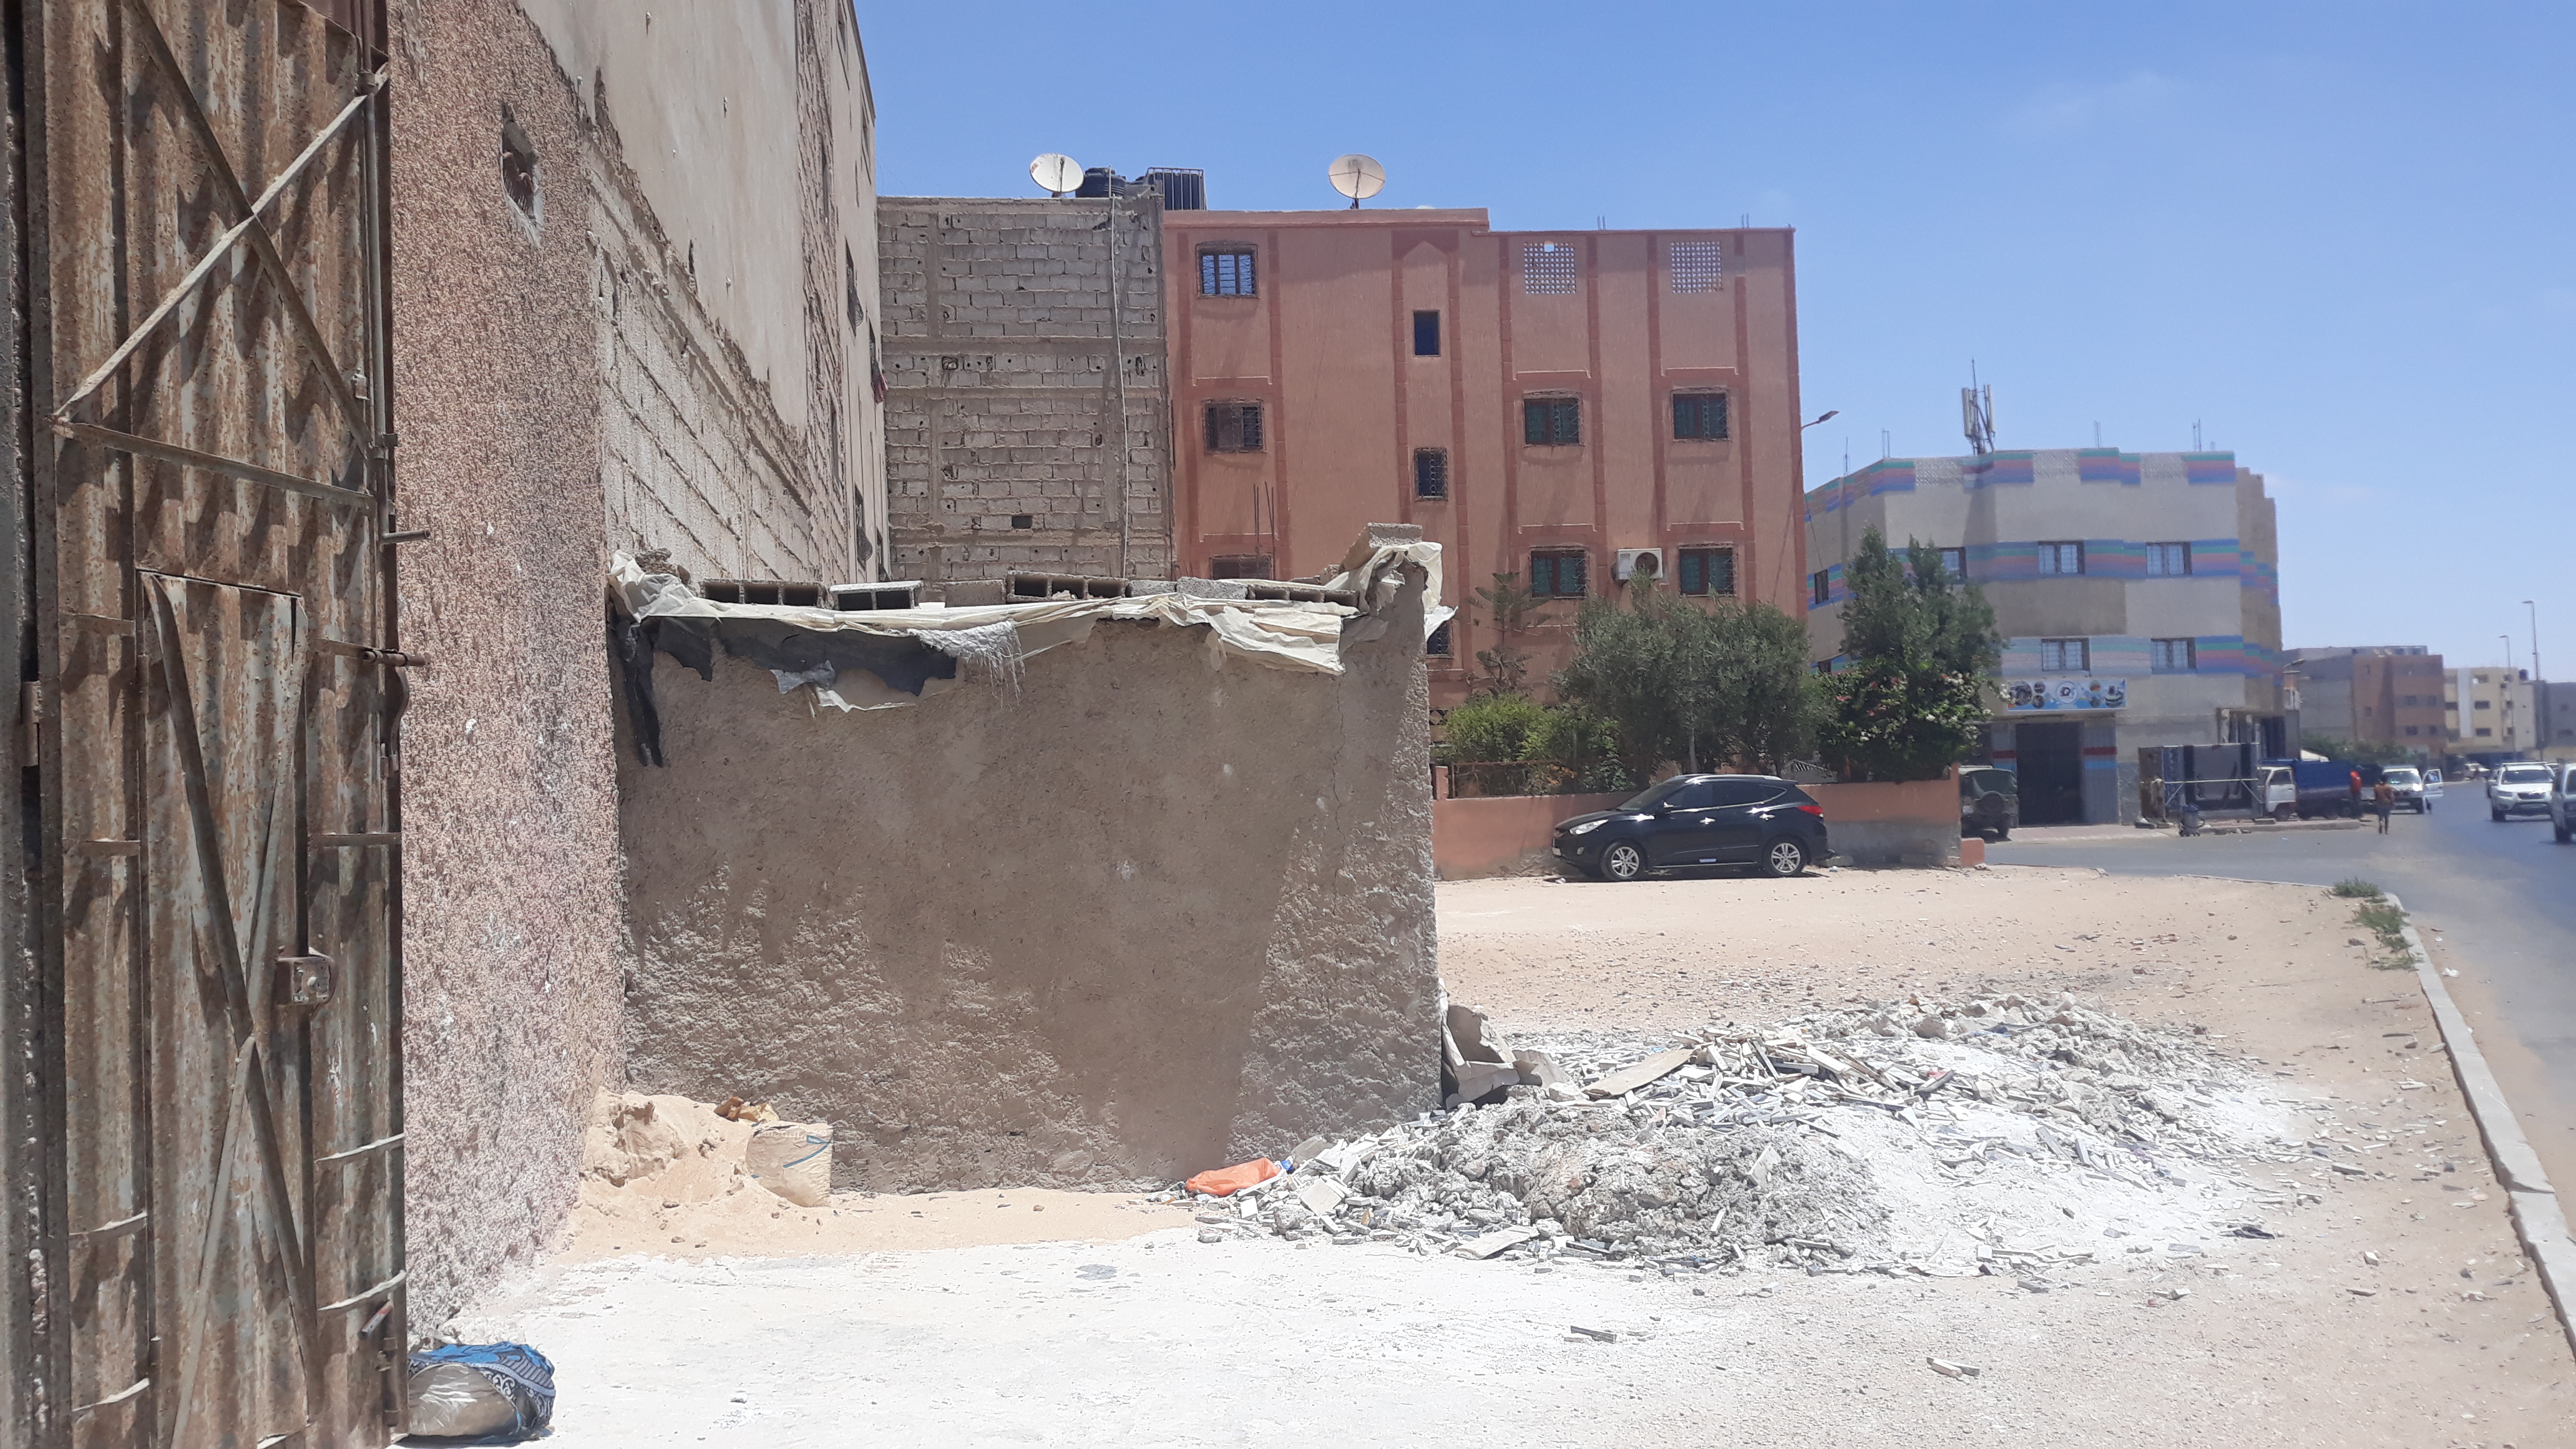 البناء العشوائي المشيد امام الواجهة الخلفية لملكية المواطن "الحسين البيروكي"